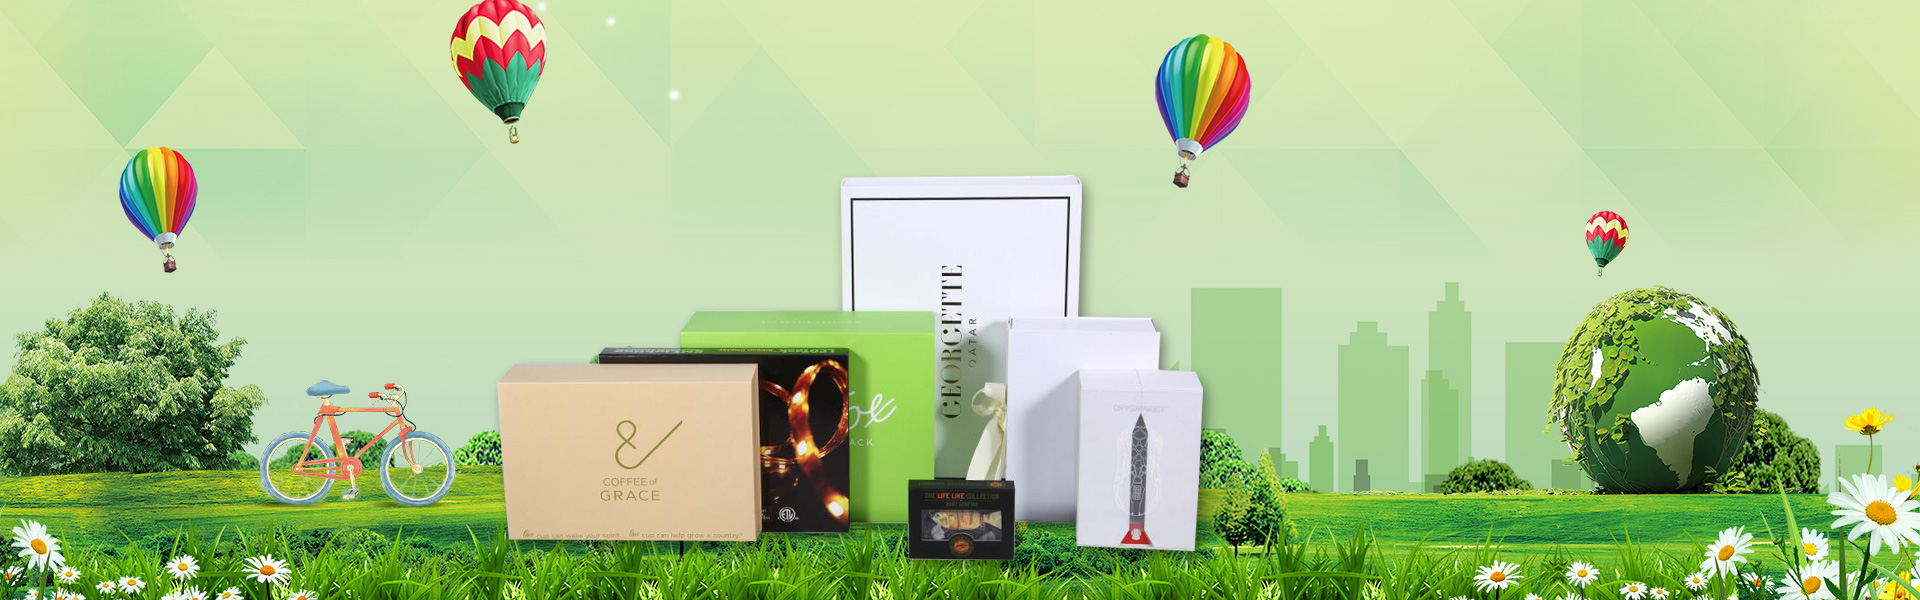 กล่องของขวัญ, กล่องบรรจุ, ฉลาก,Dongguan chengyuan packaging products Co,.Ltd